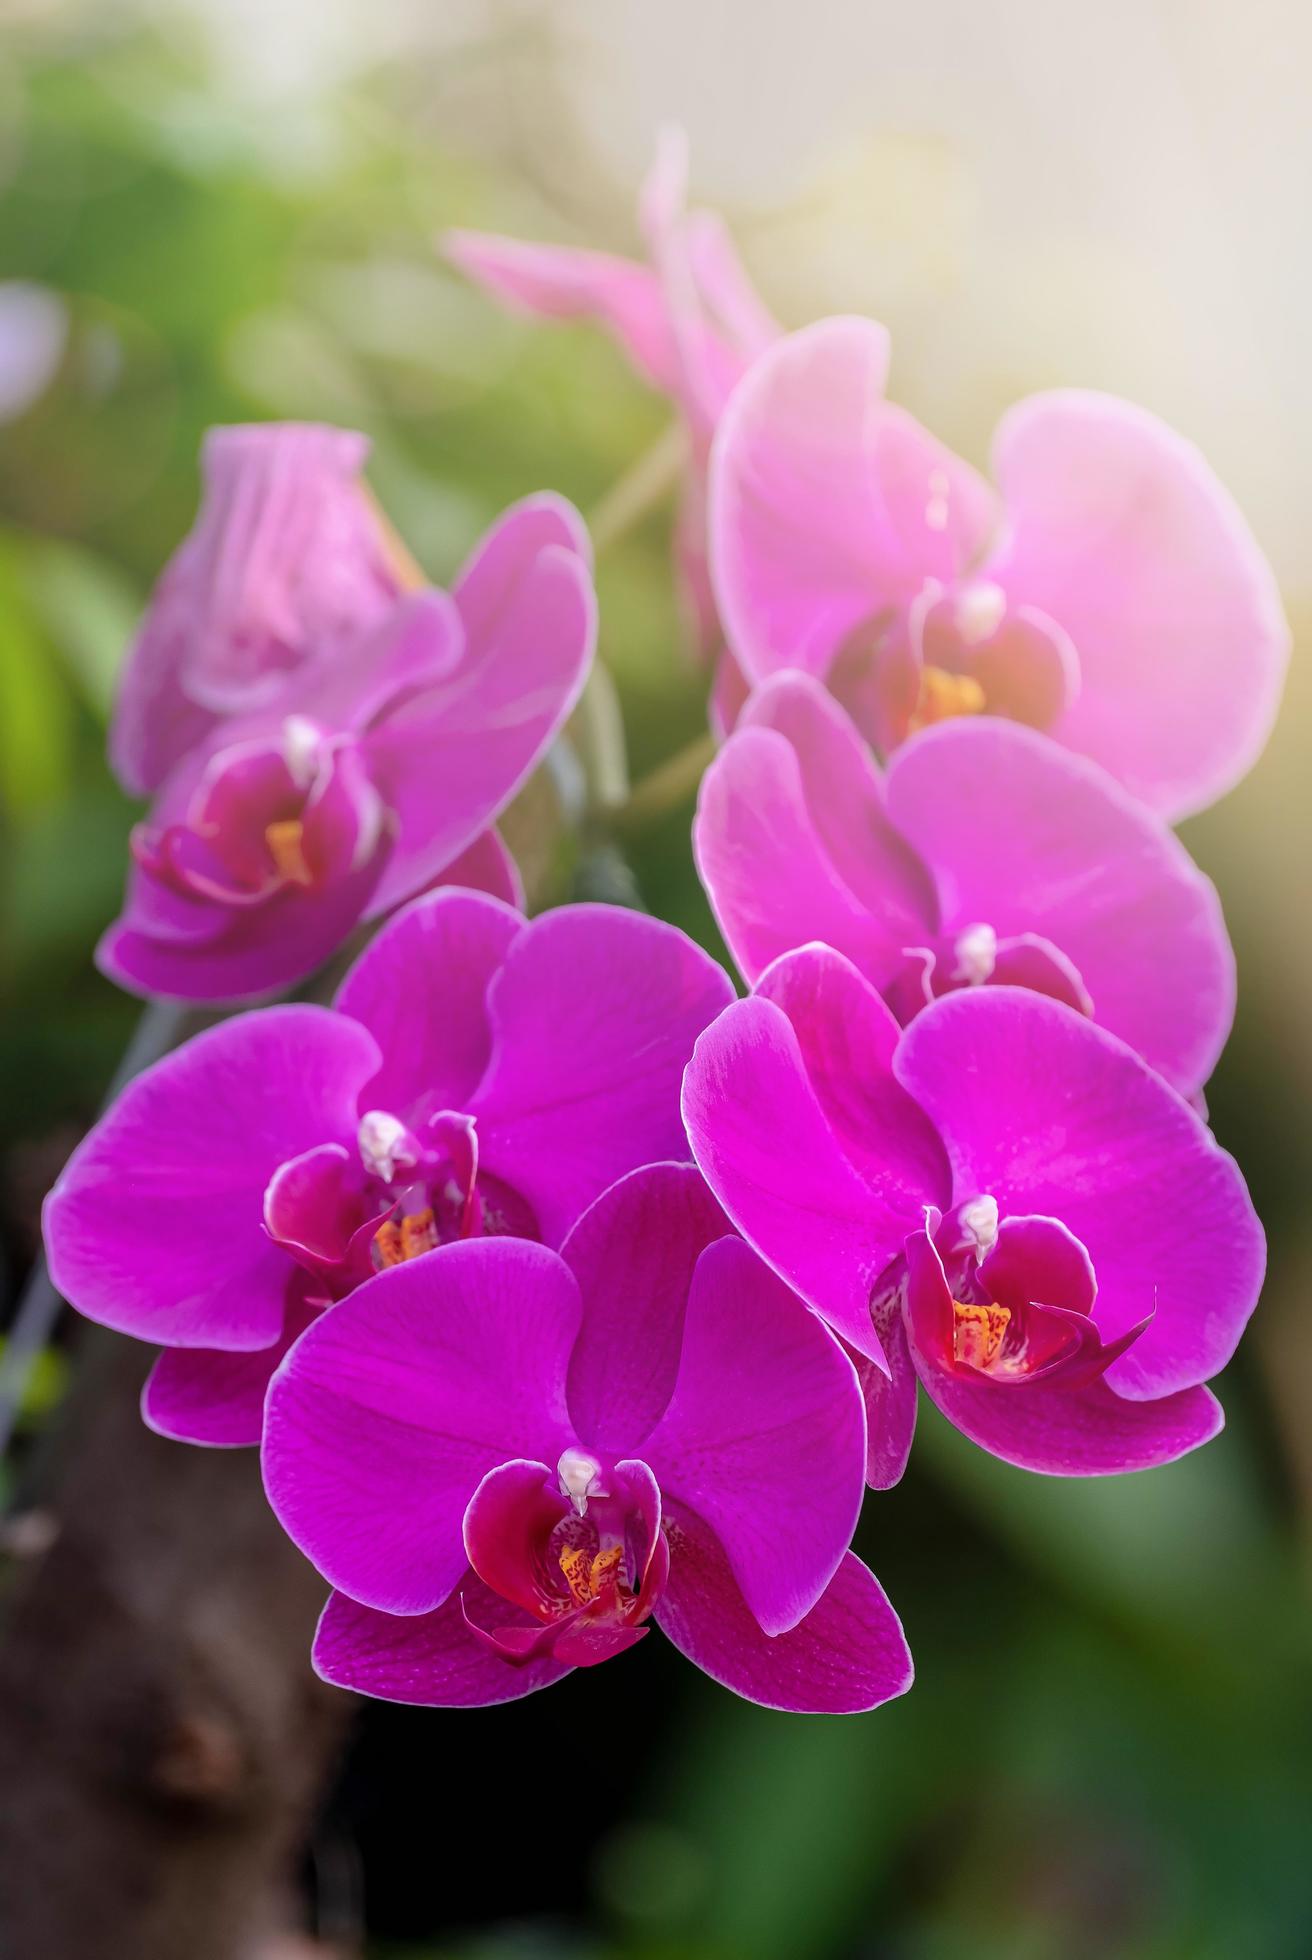 flor de orquídea roxa no jardim de orquídeas no inverno. flor de orquídea  para design de beleza e agricultura de cartão postal. linda flor de orquídea  no jardim, em plena floração na